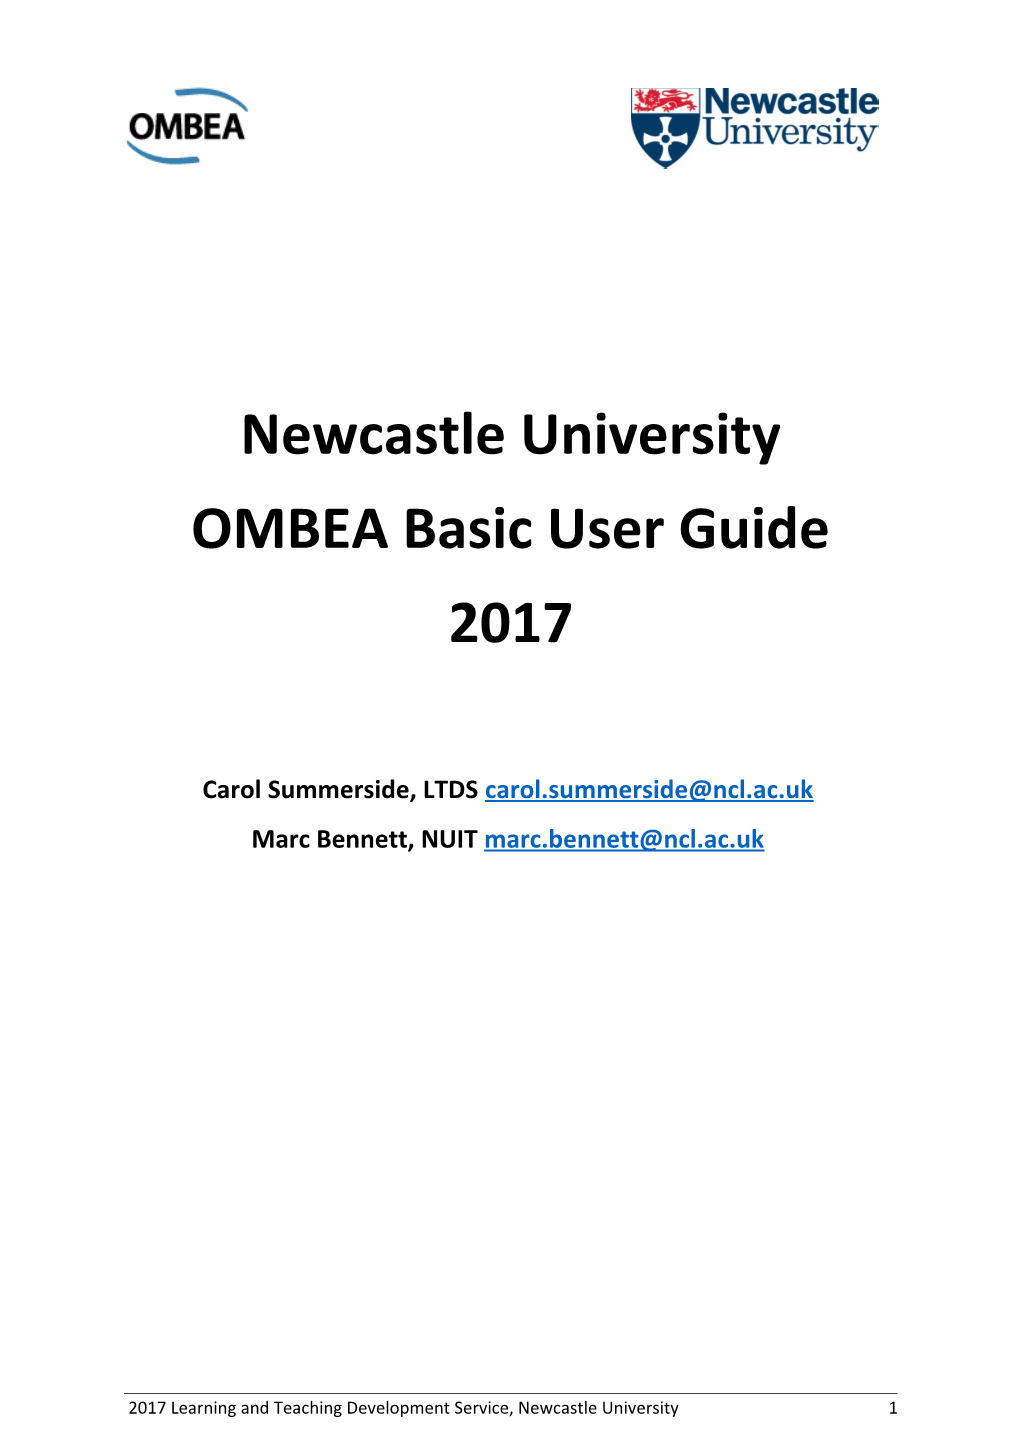 OMBEA Basic User Guide